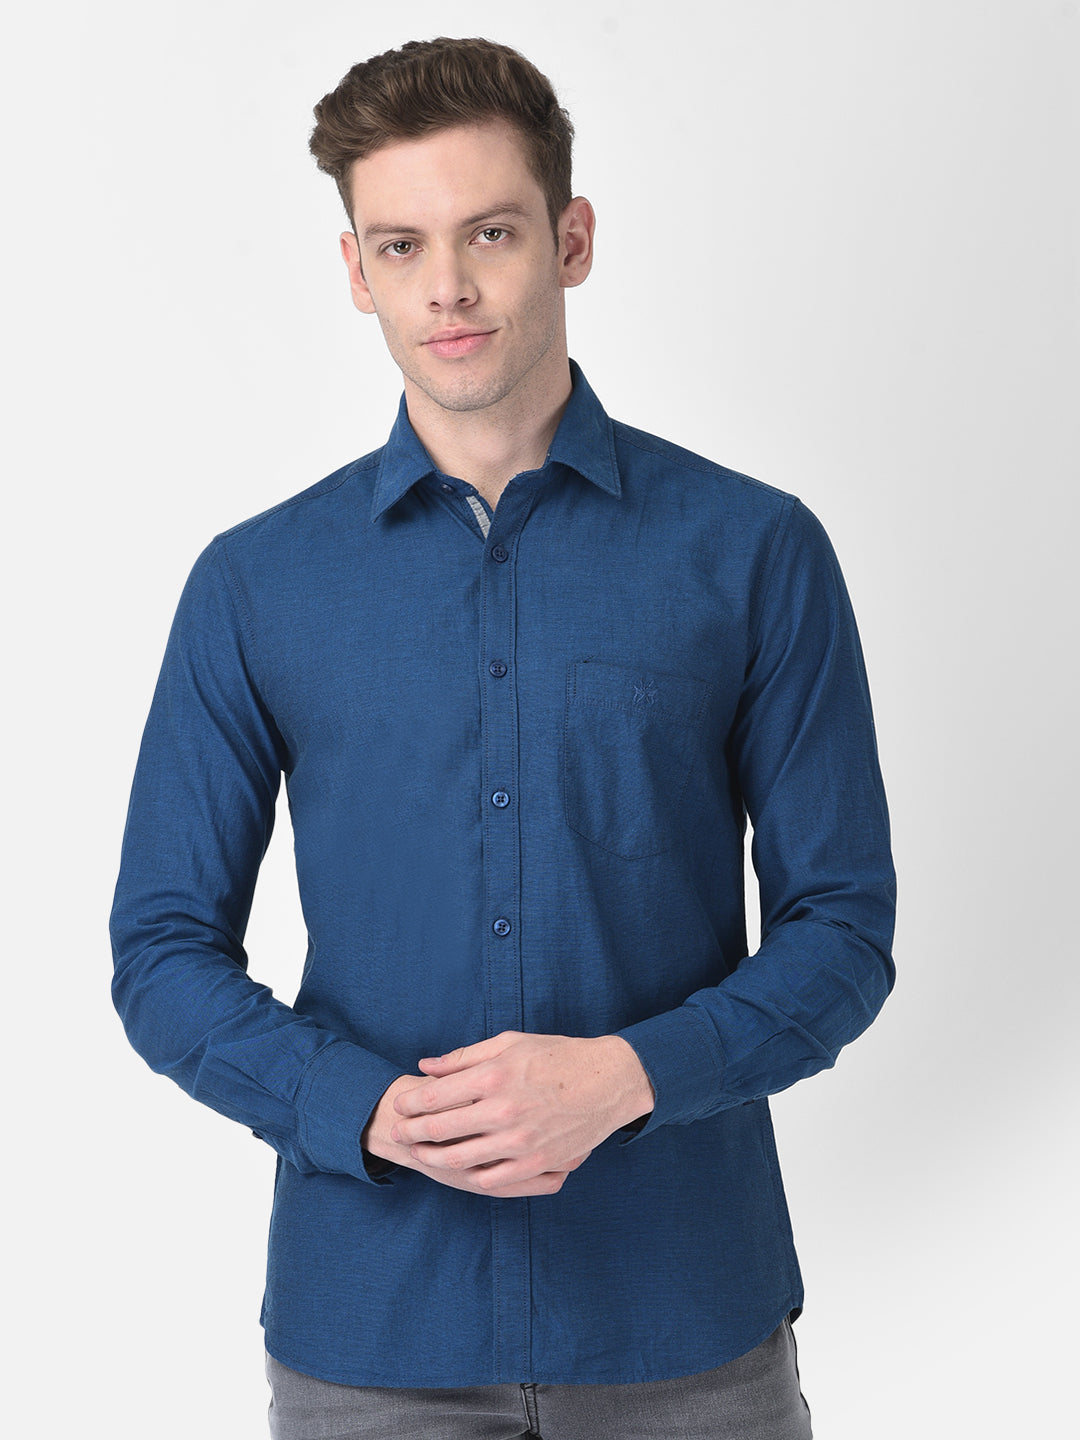 Blue Textured Shirt-Men Shirts-Crimsoune Club